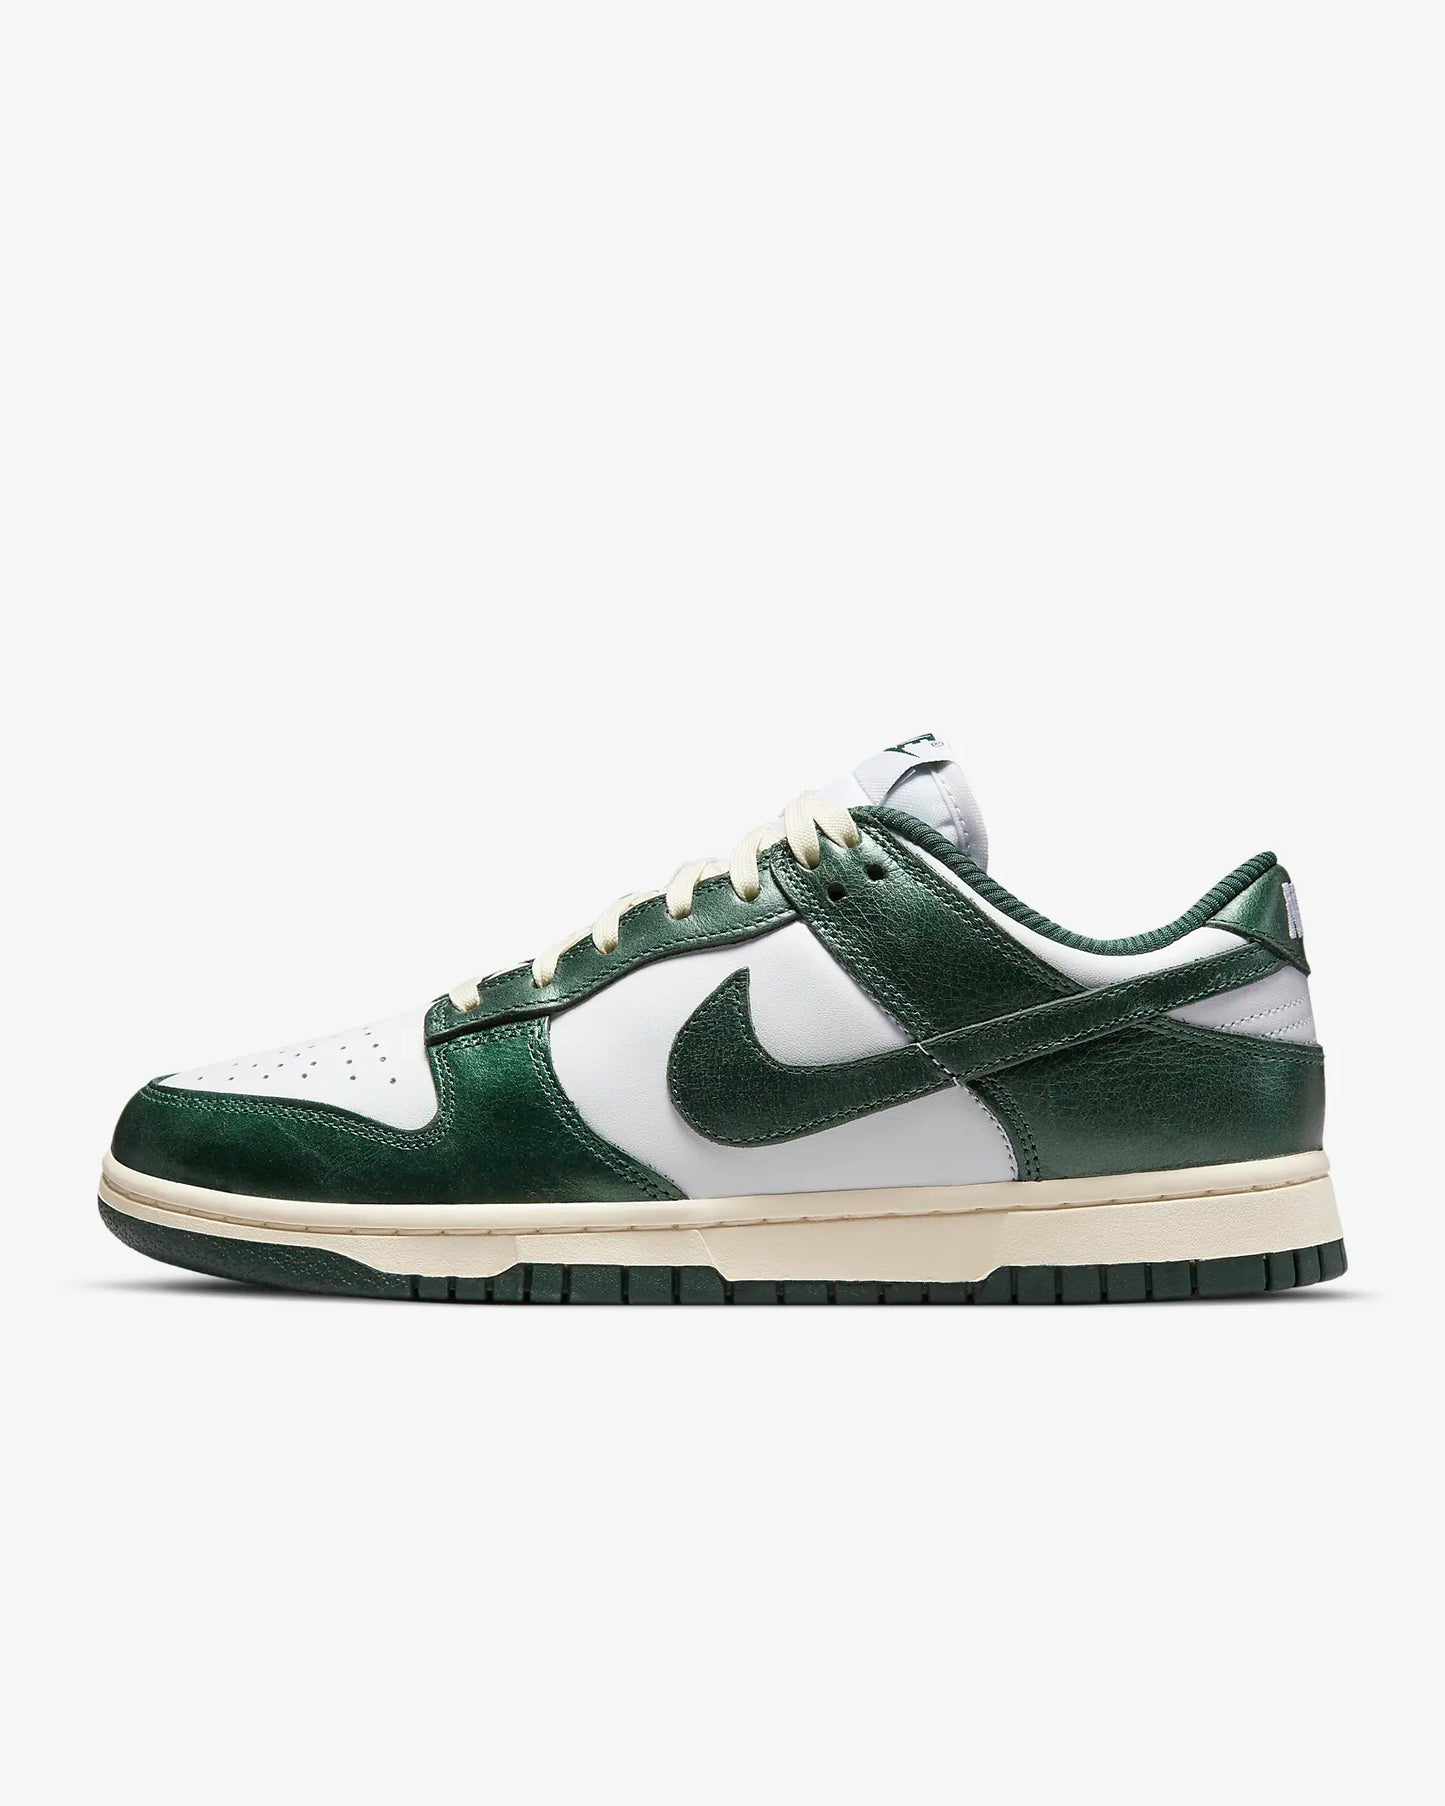 Nike Dunk Low Premium - Vintage Green